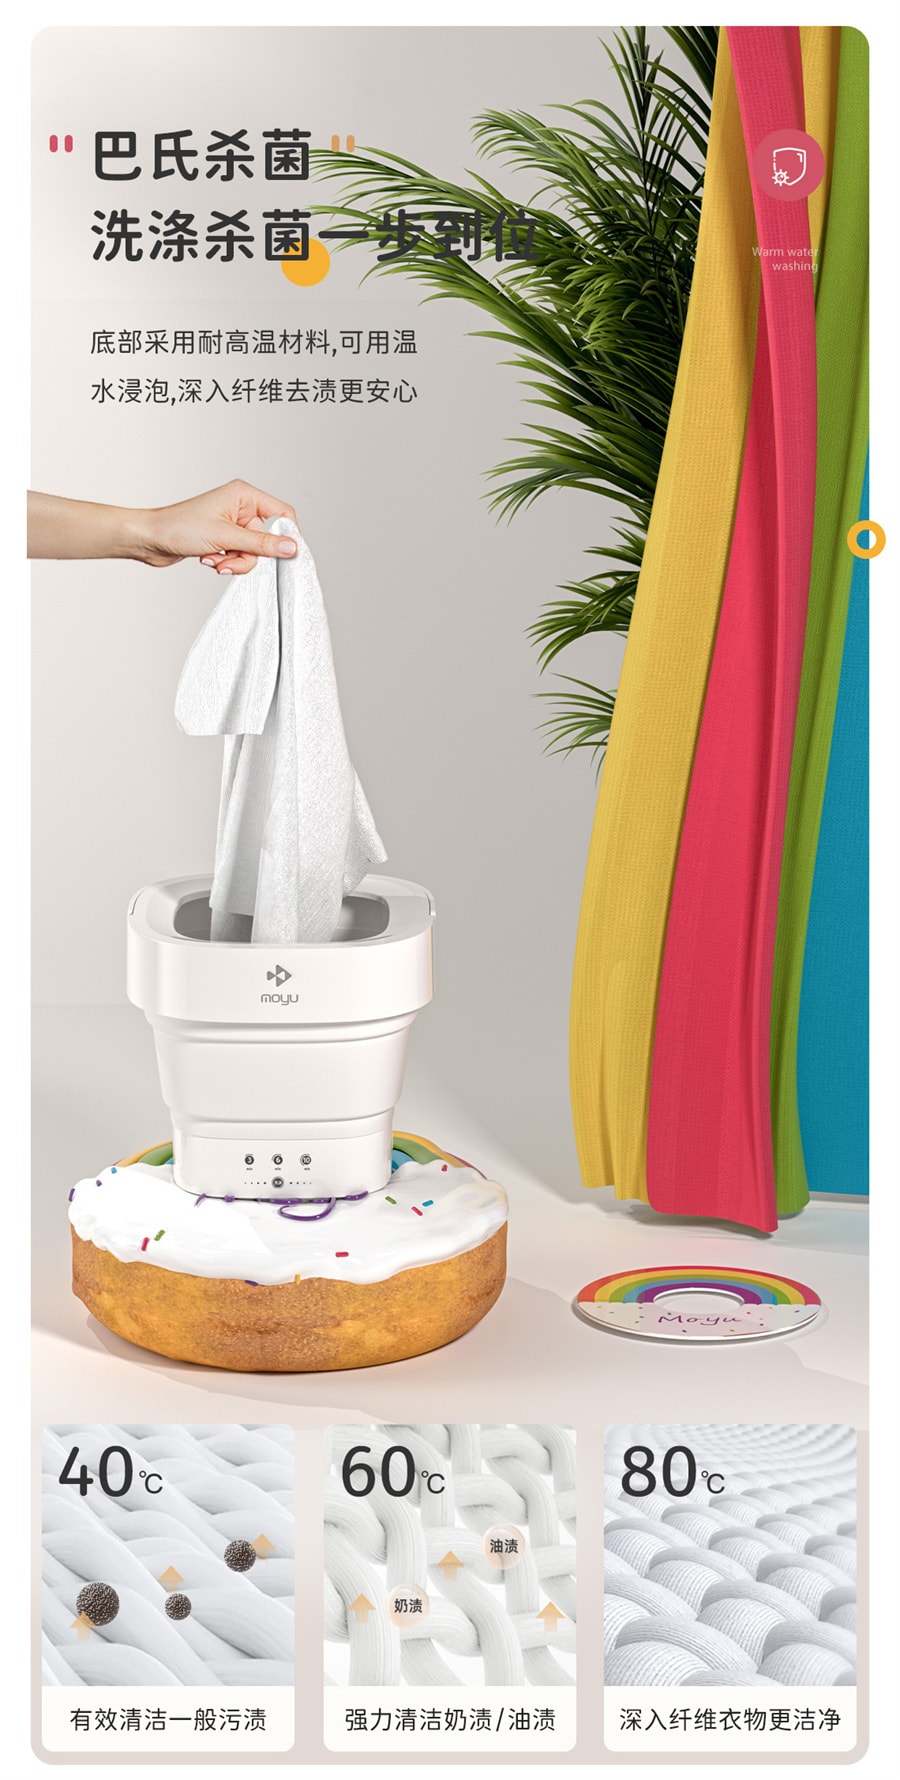 【美國極速出貨】摩魚 迷你摺疊洗衣機 小型便攜內褲清洗機 MINI01-S甜甜圈 美規版